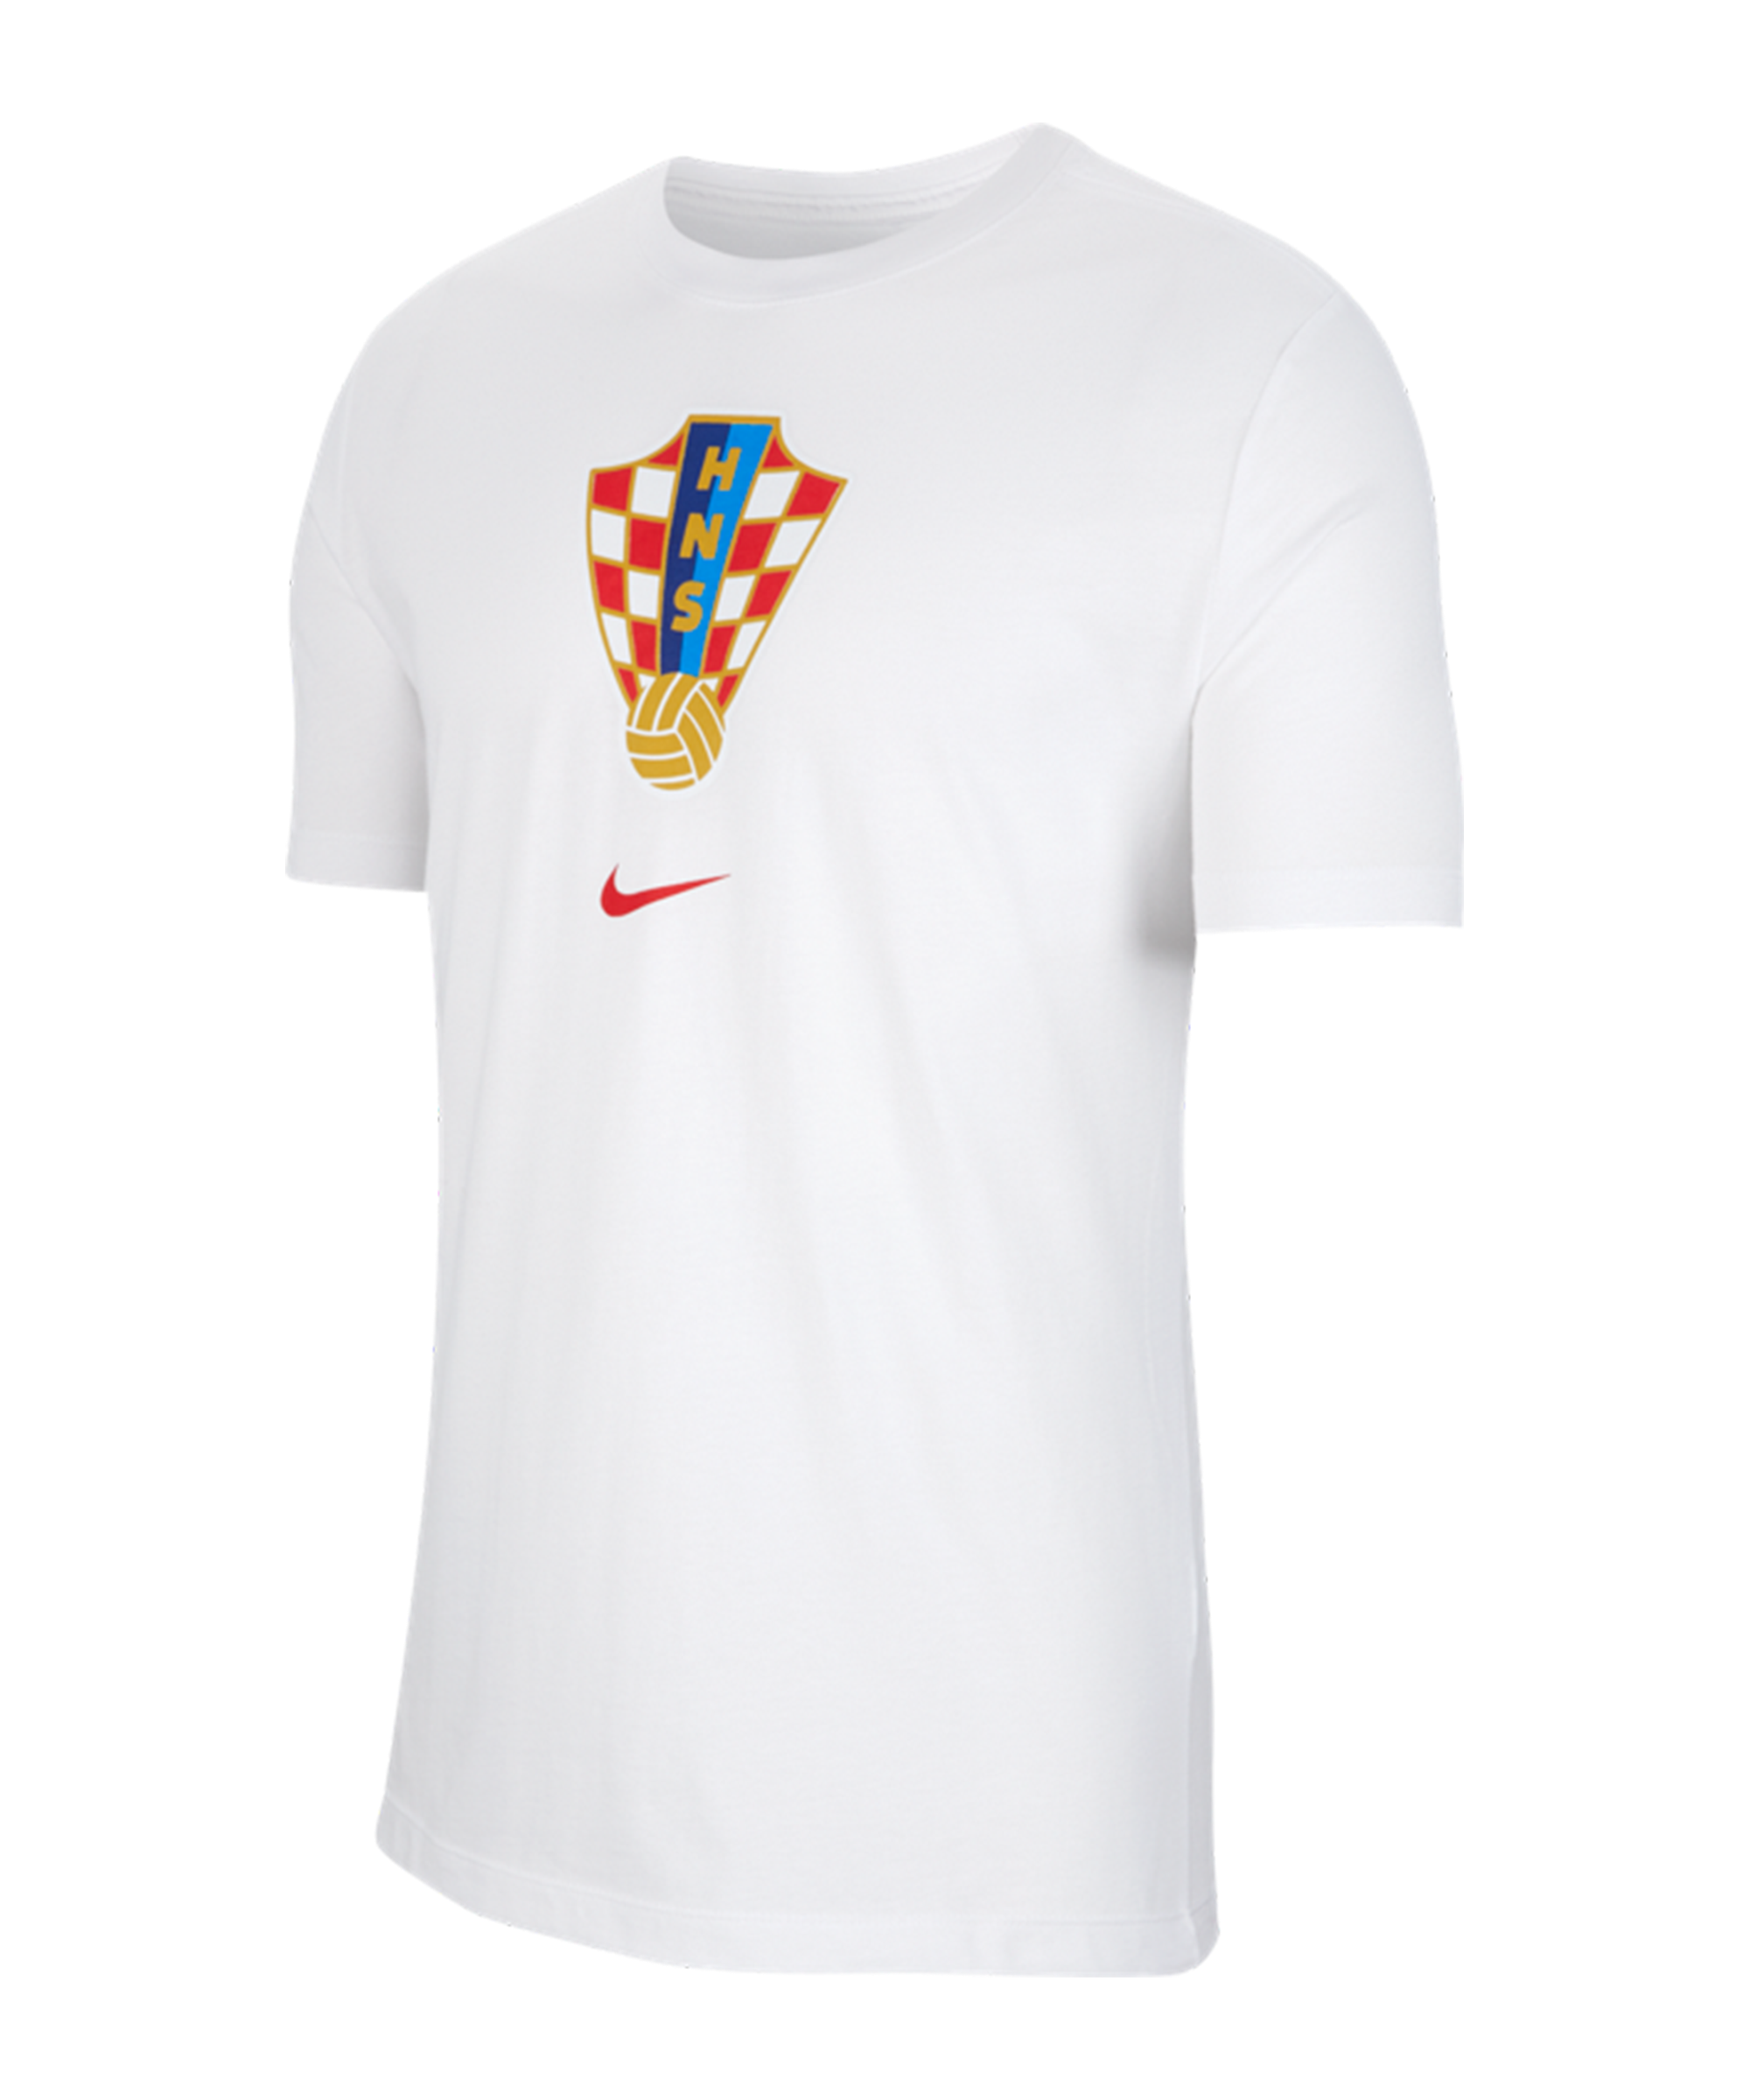 Voortdurende overeenkomst eigendom Nike Kroatien Evergreen Crest Tee T-Shirt - White